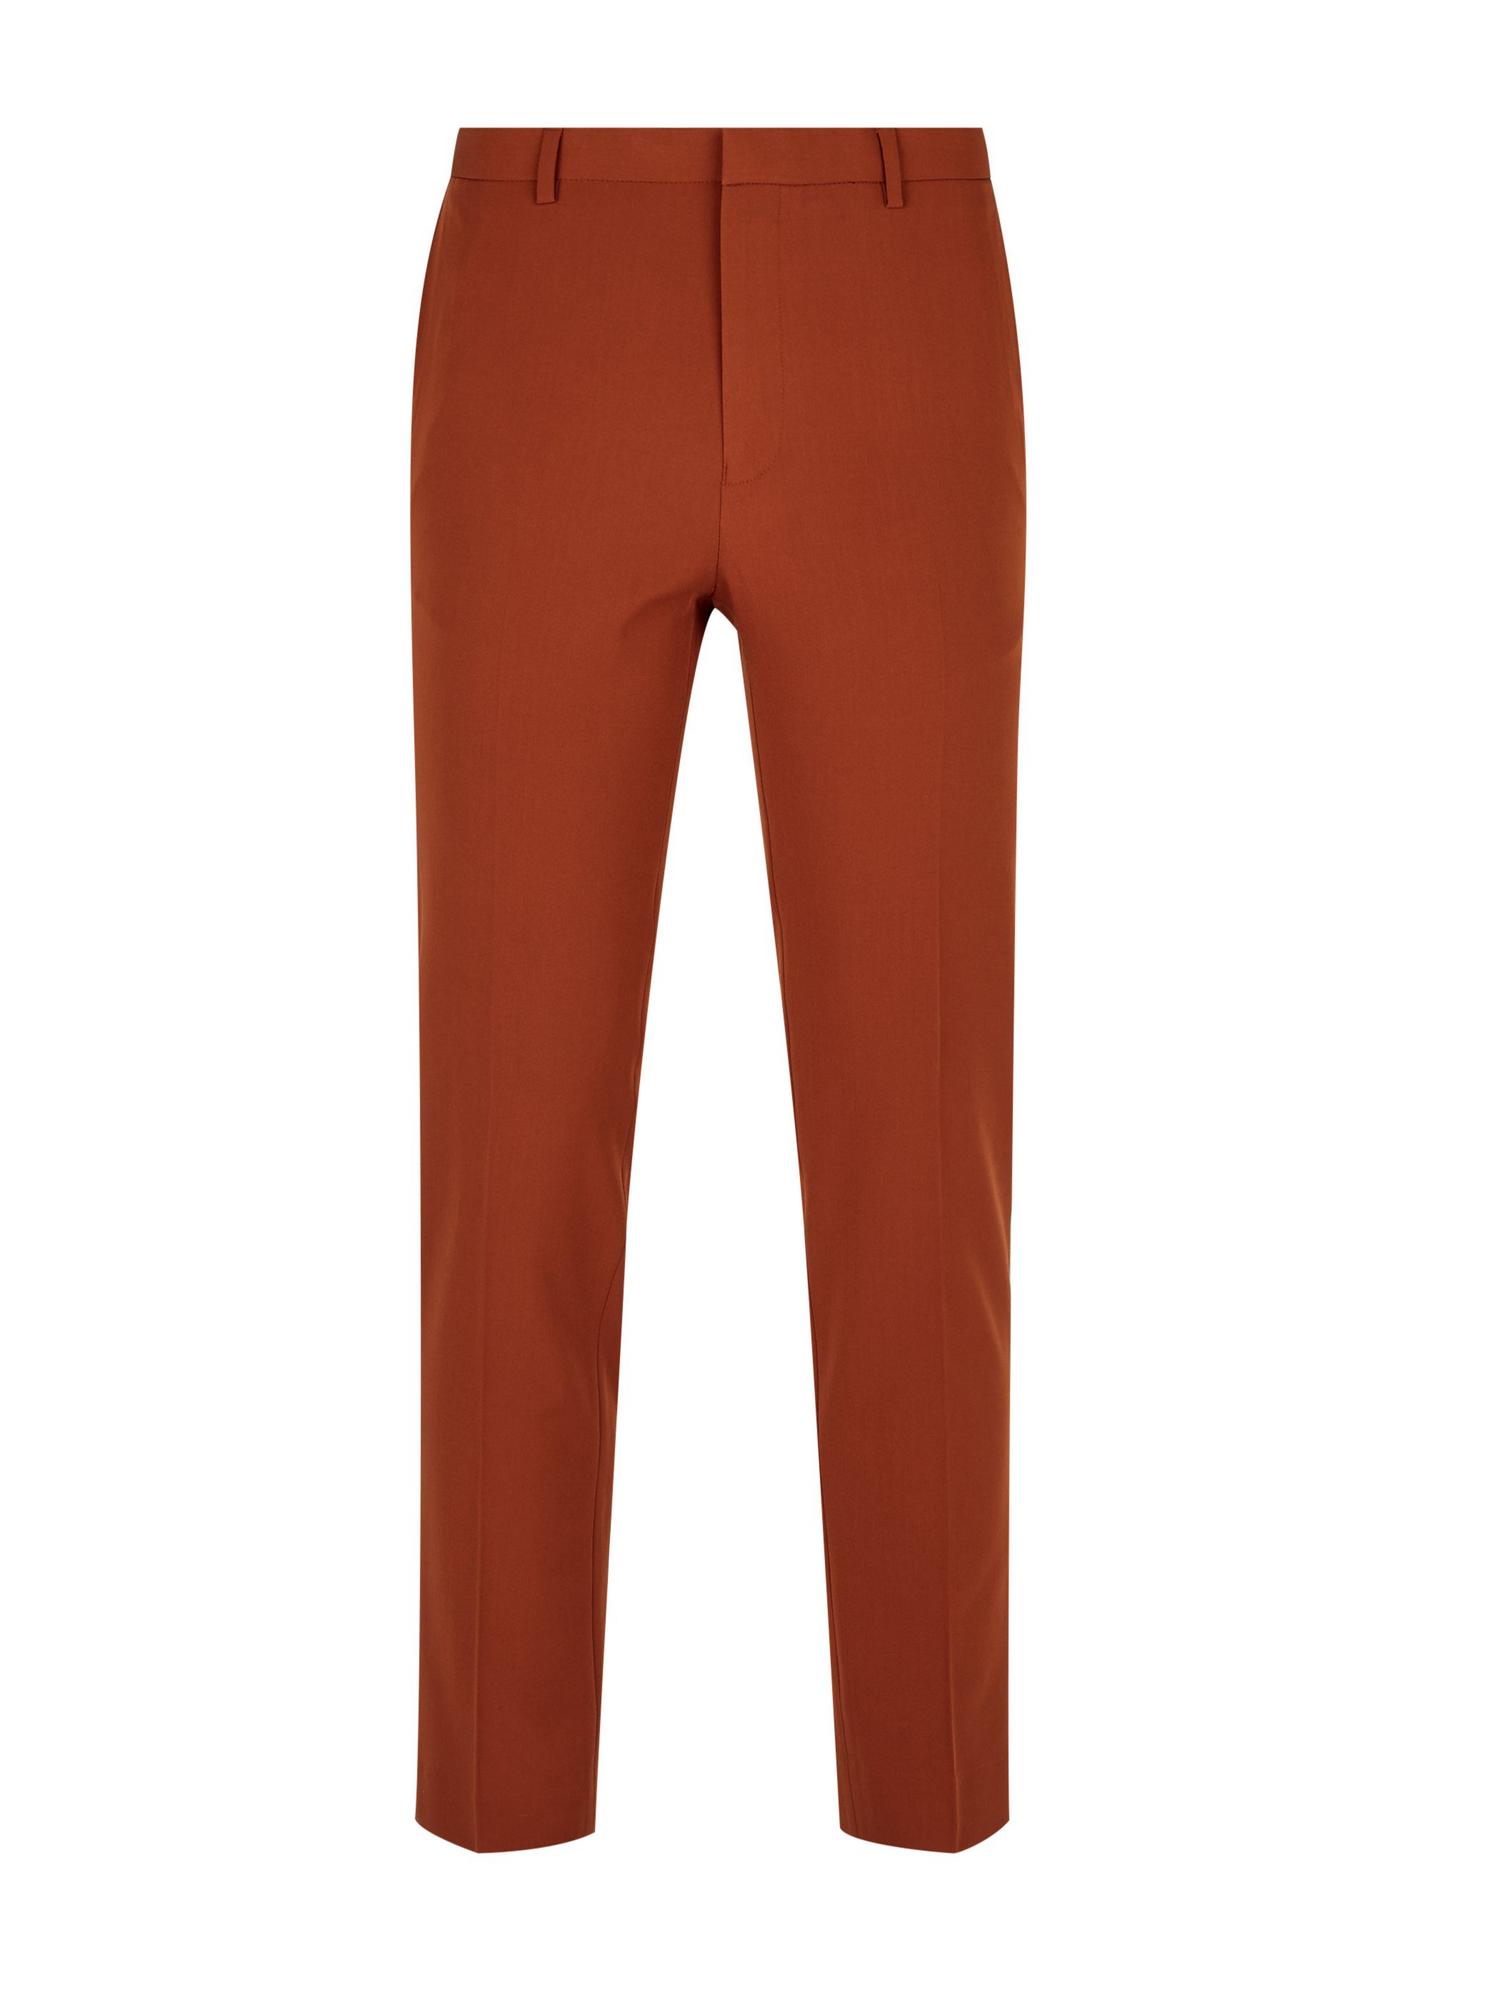 Brown Skinny Fit Suit Trousers | Burton UK